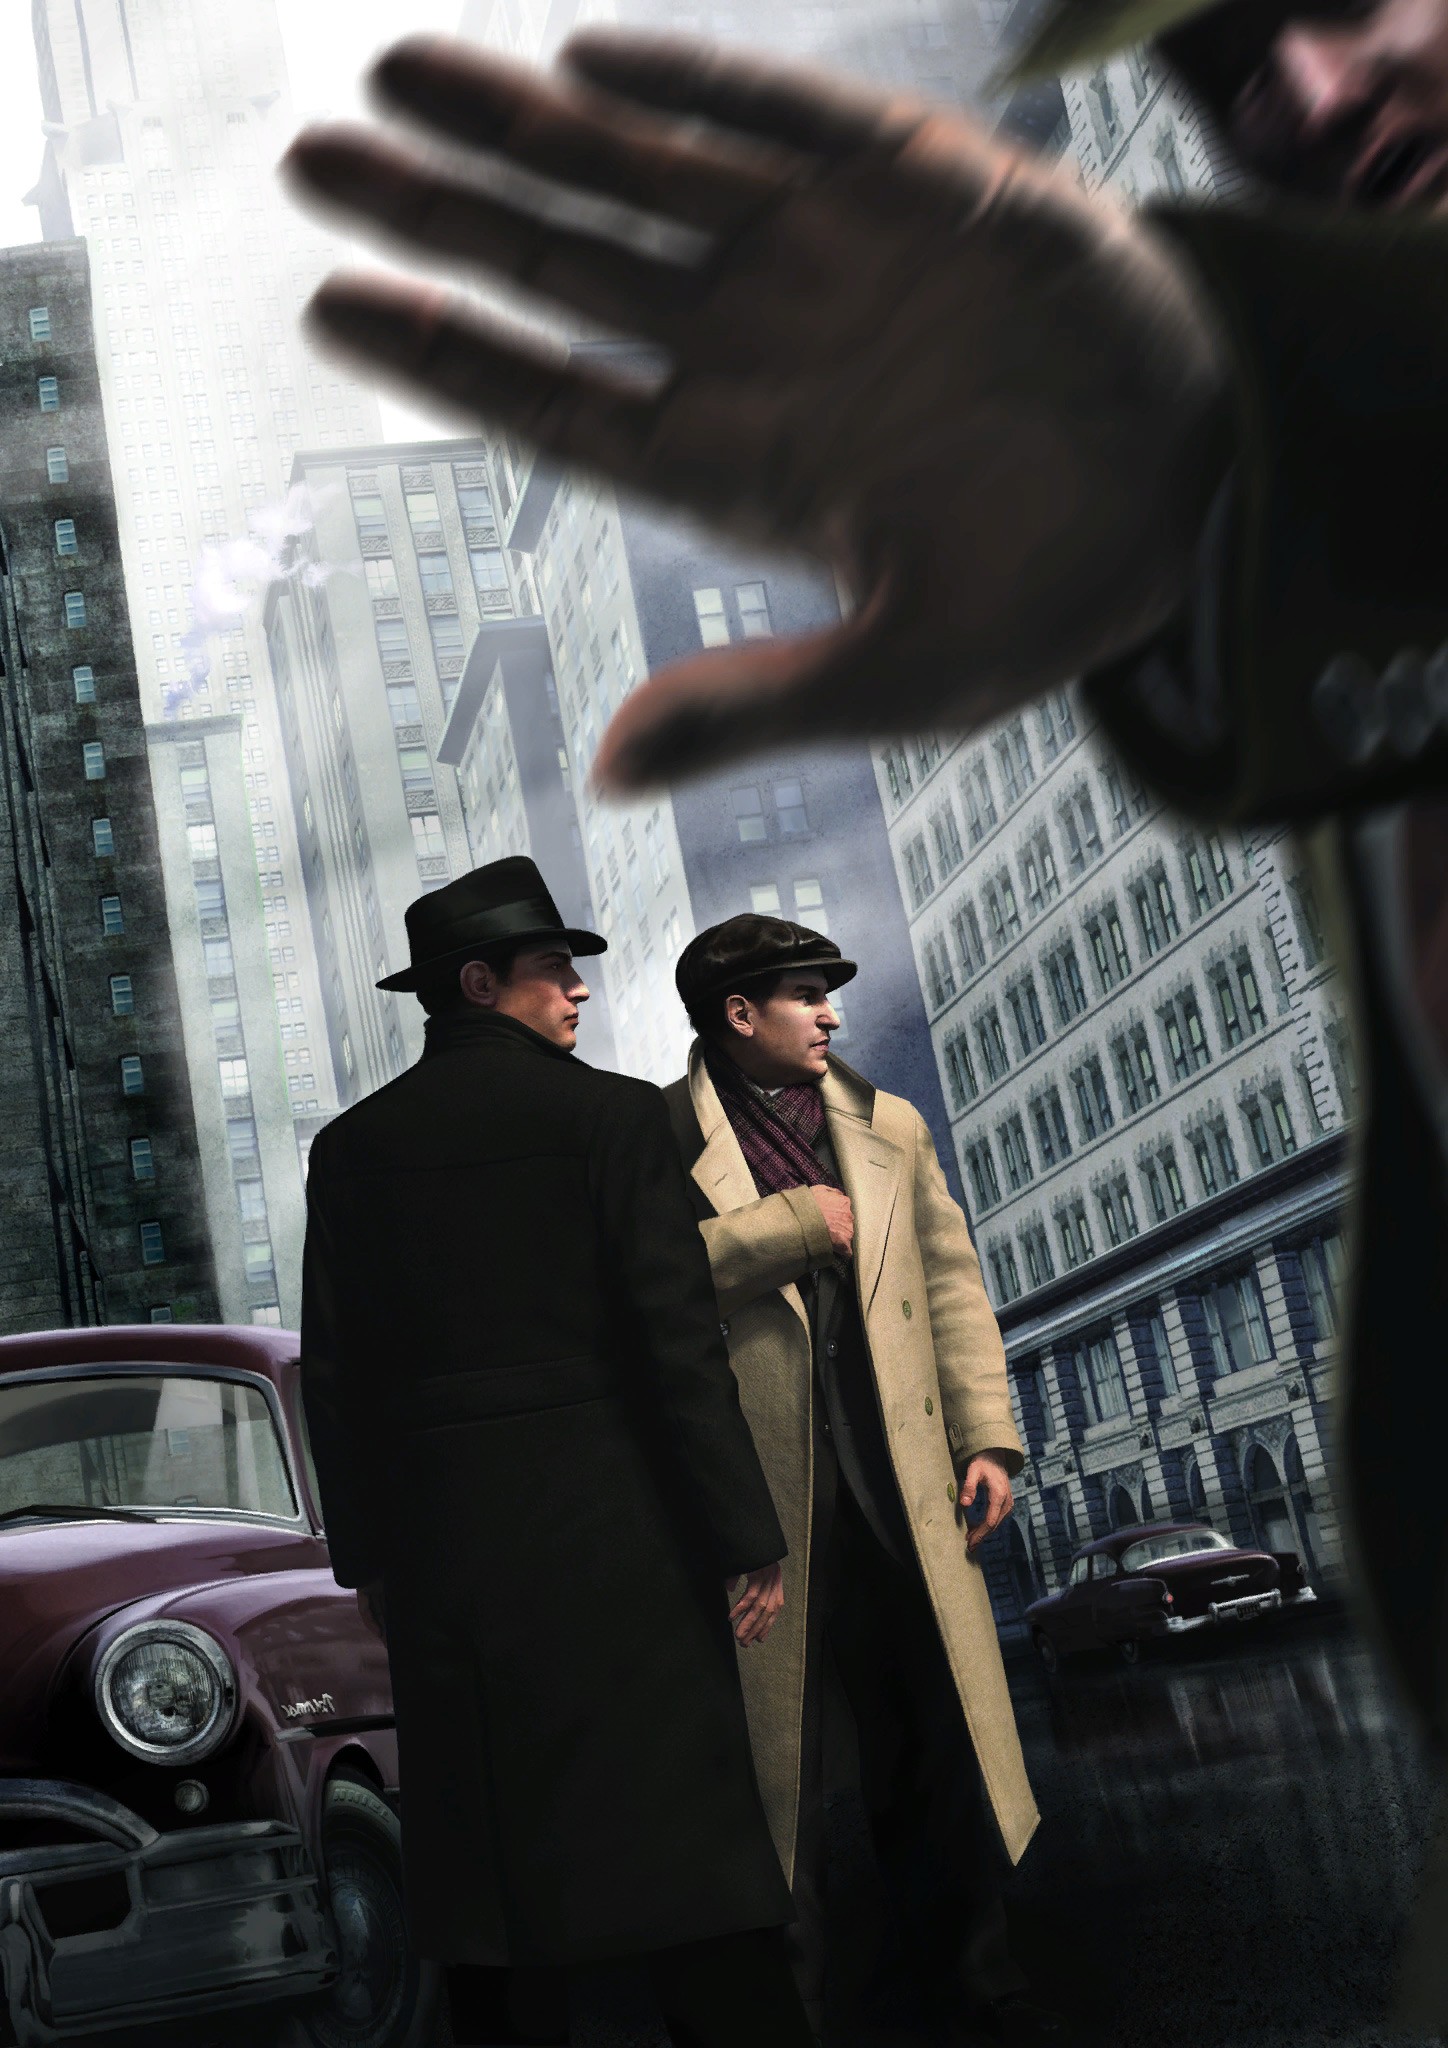 General 1448x2048 Mafia II video games Mafia PC gaming video game art gangster crime car